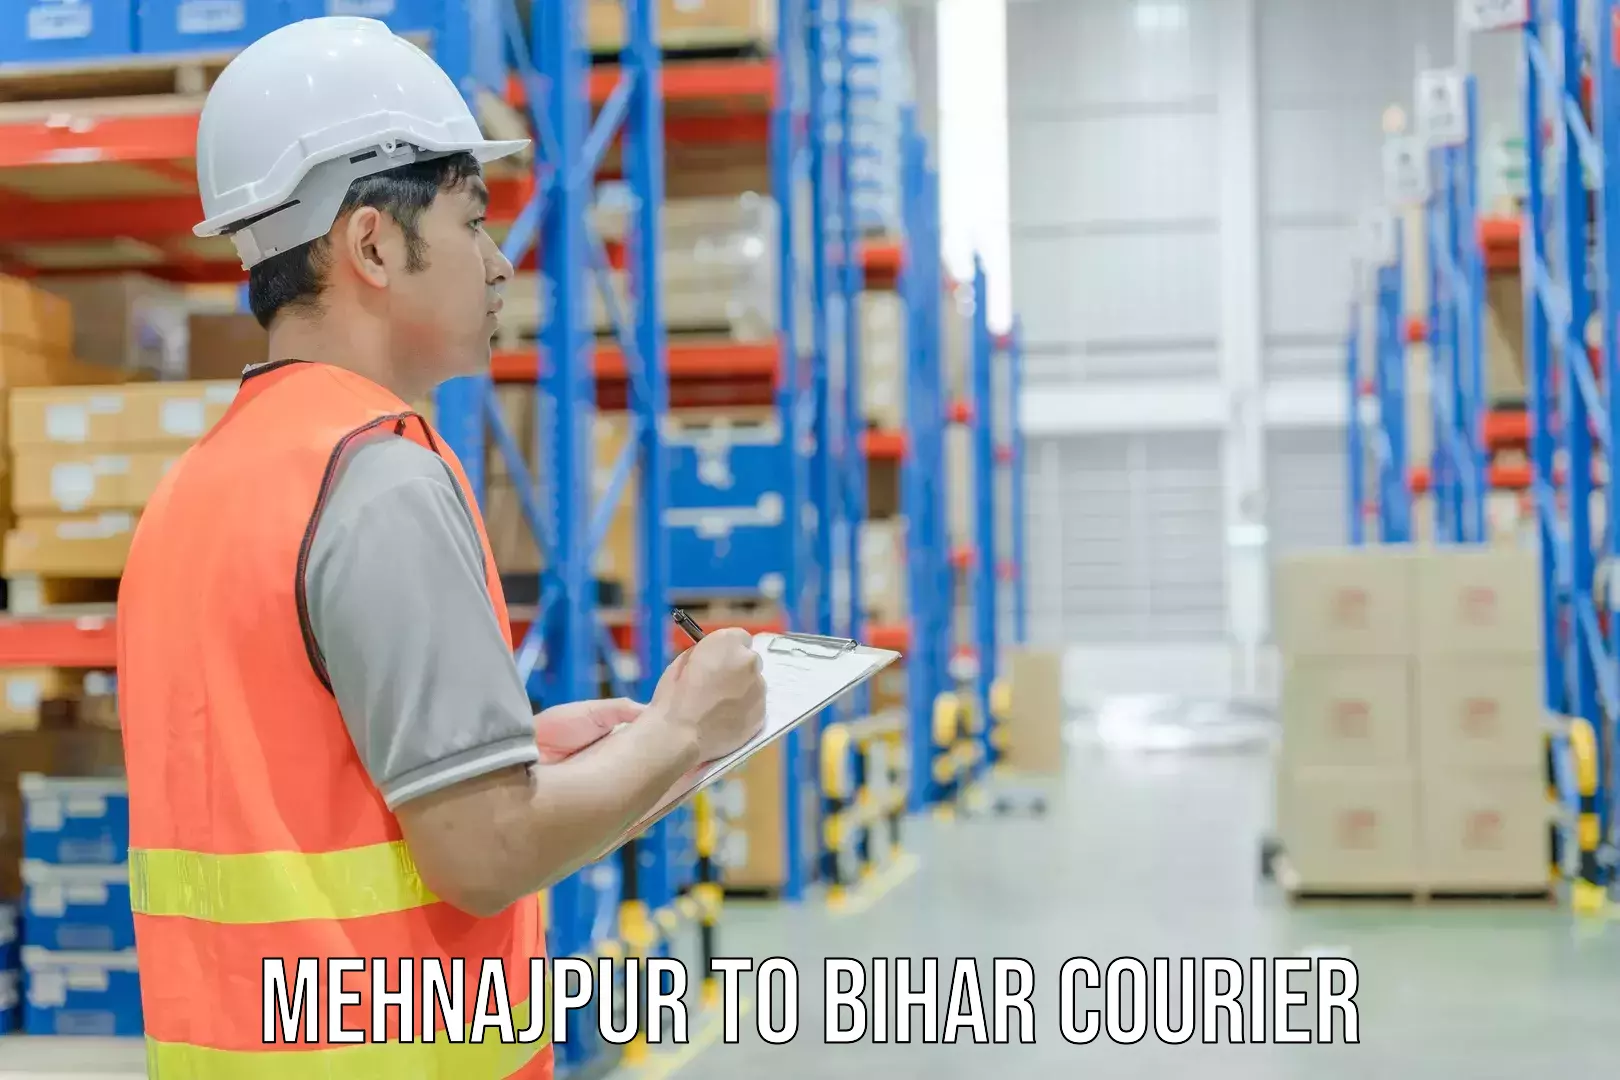 Affordable parcel service Mehnajpur to Aurai